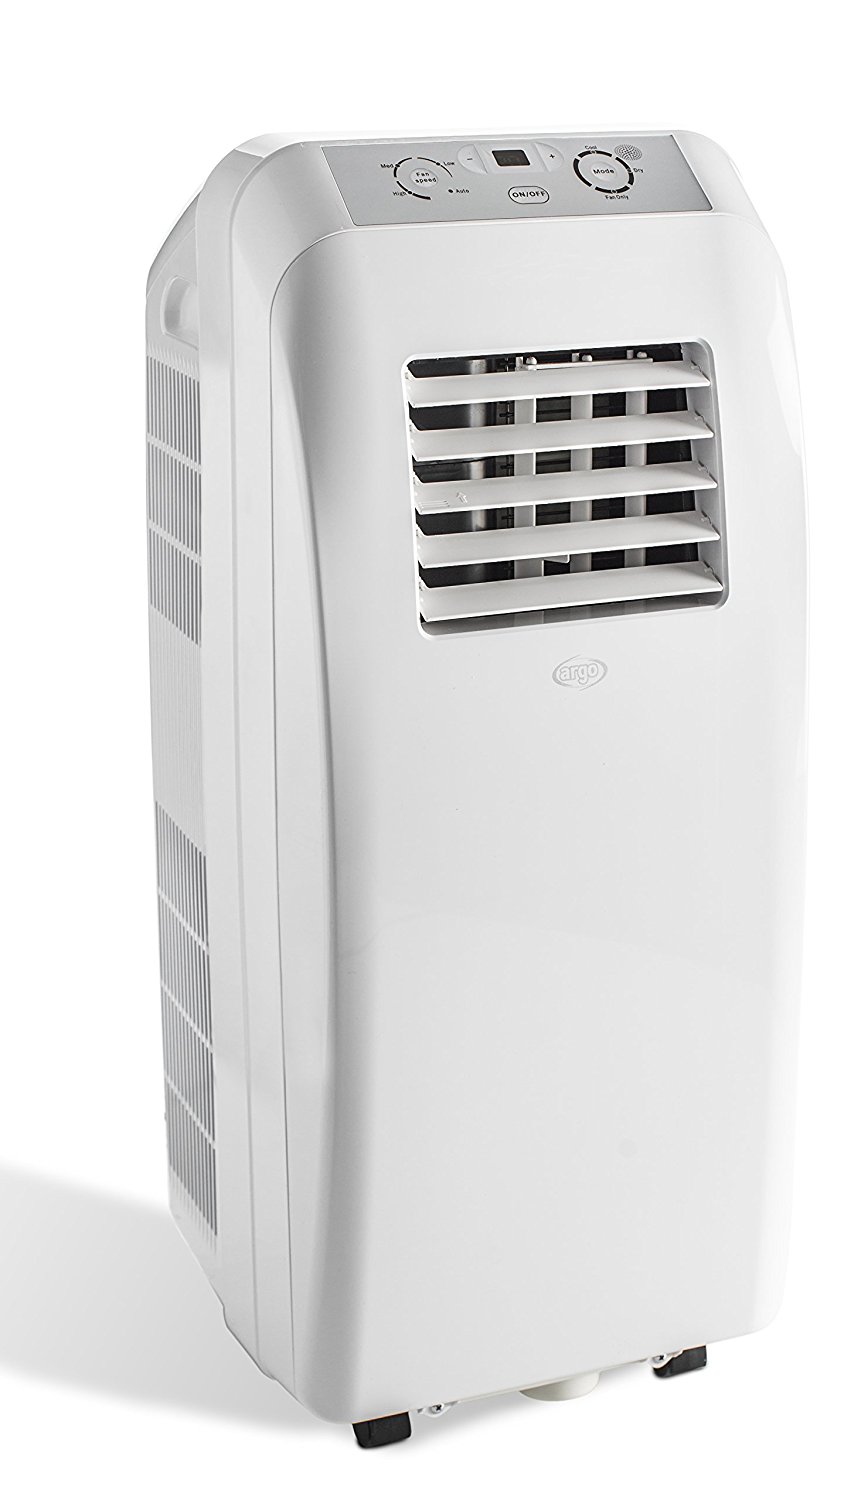 riscaldamento e raffreddamento climatizzatore portatile per ambienti fino a 5 mq Fetcoi Condizionatore portatile da 950 W per finestra climatizzatore con telecomando 